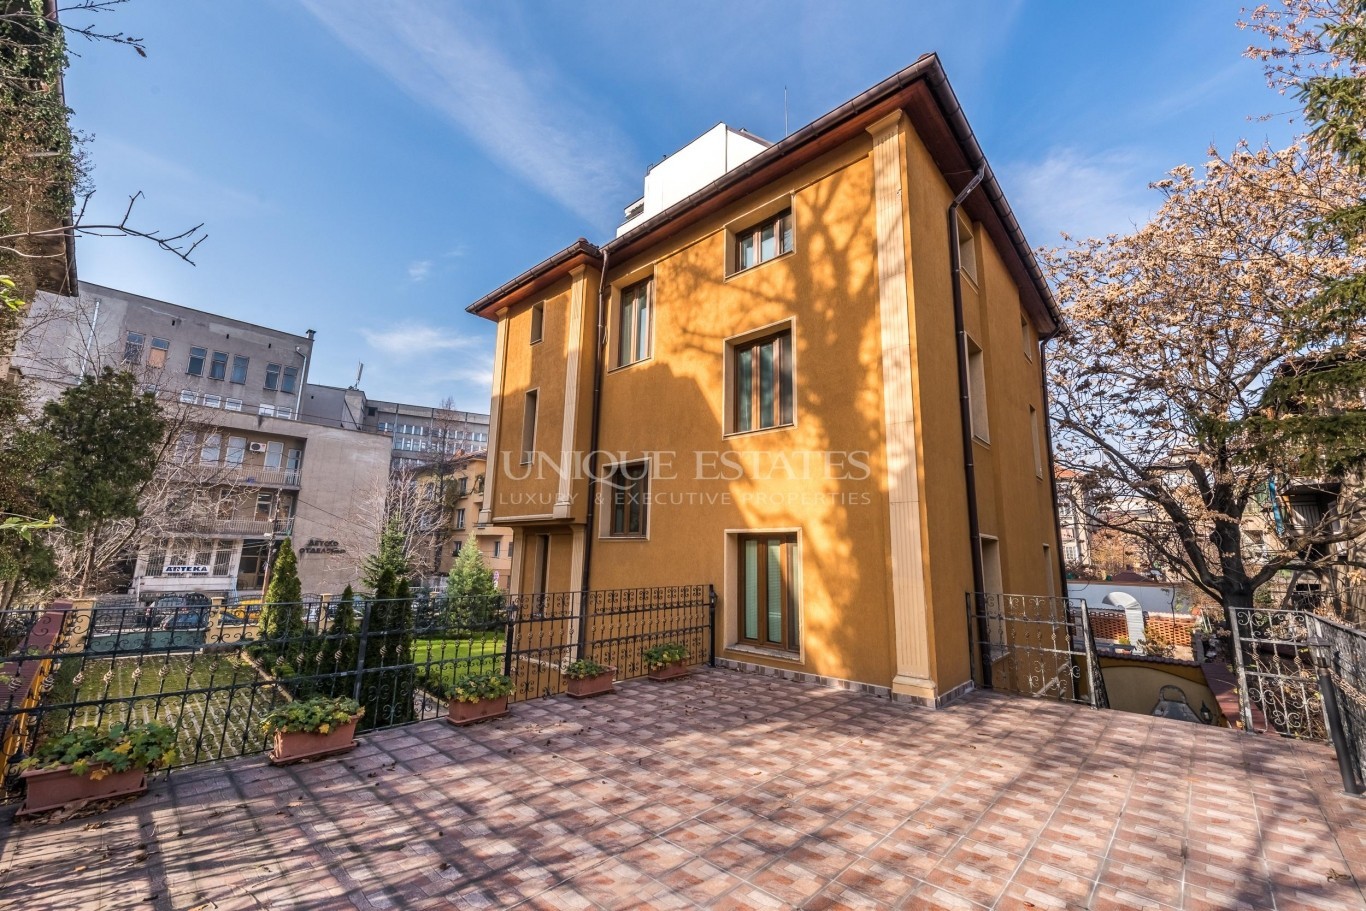 Къща под наем в София, Център - код на имота: K8822 - image 1